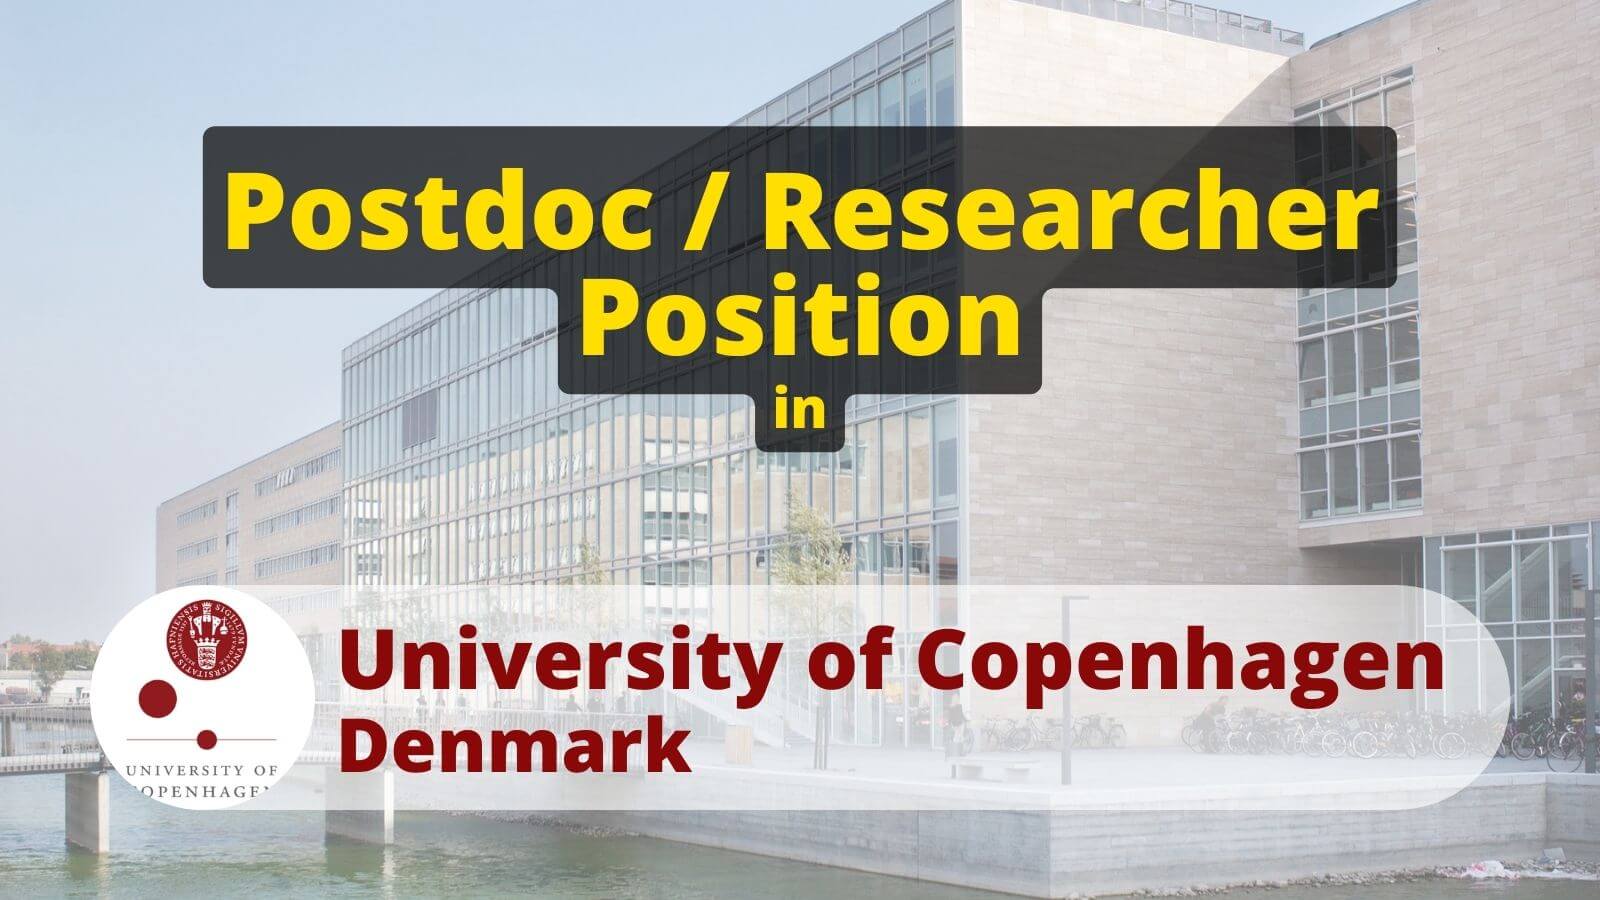 Postdoc or Researcher in Position UCPH University of Copenhagen, Denmark